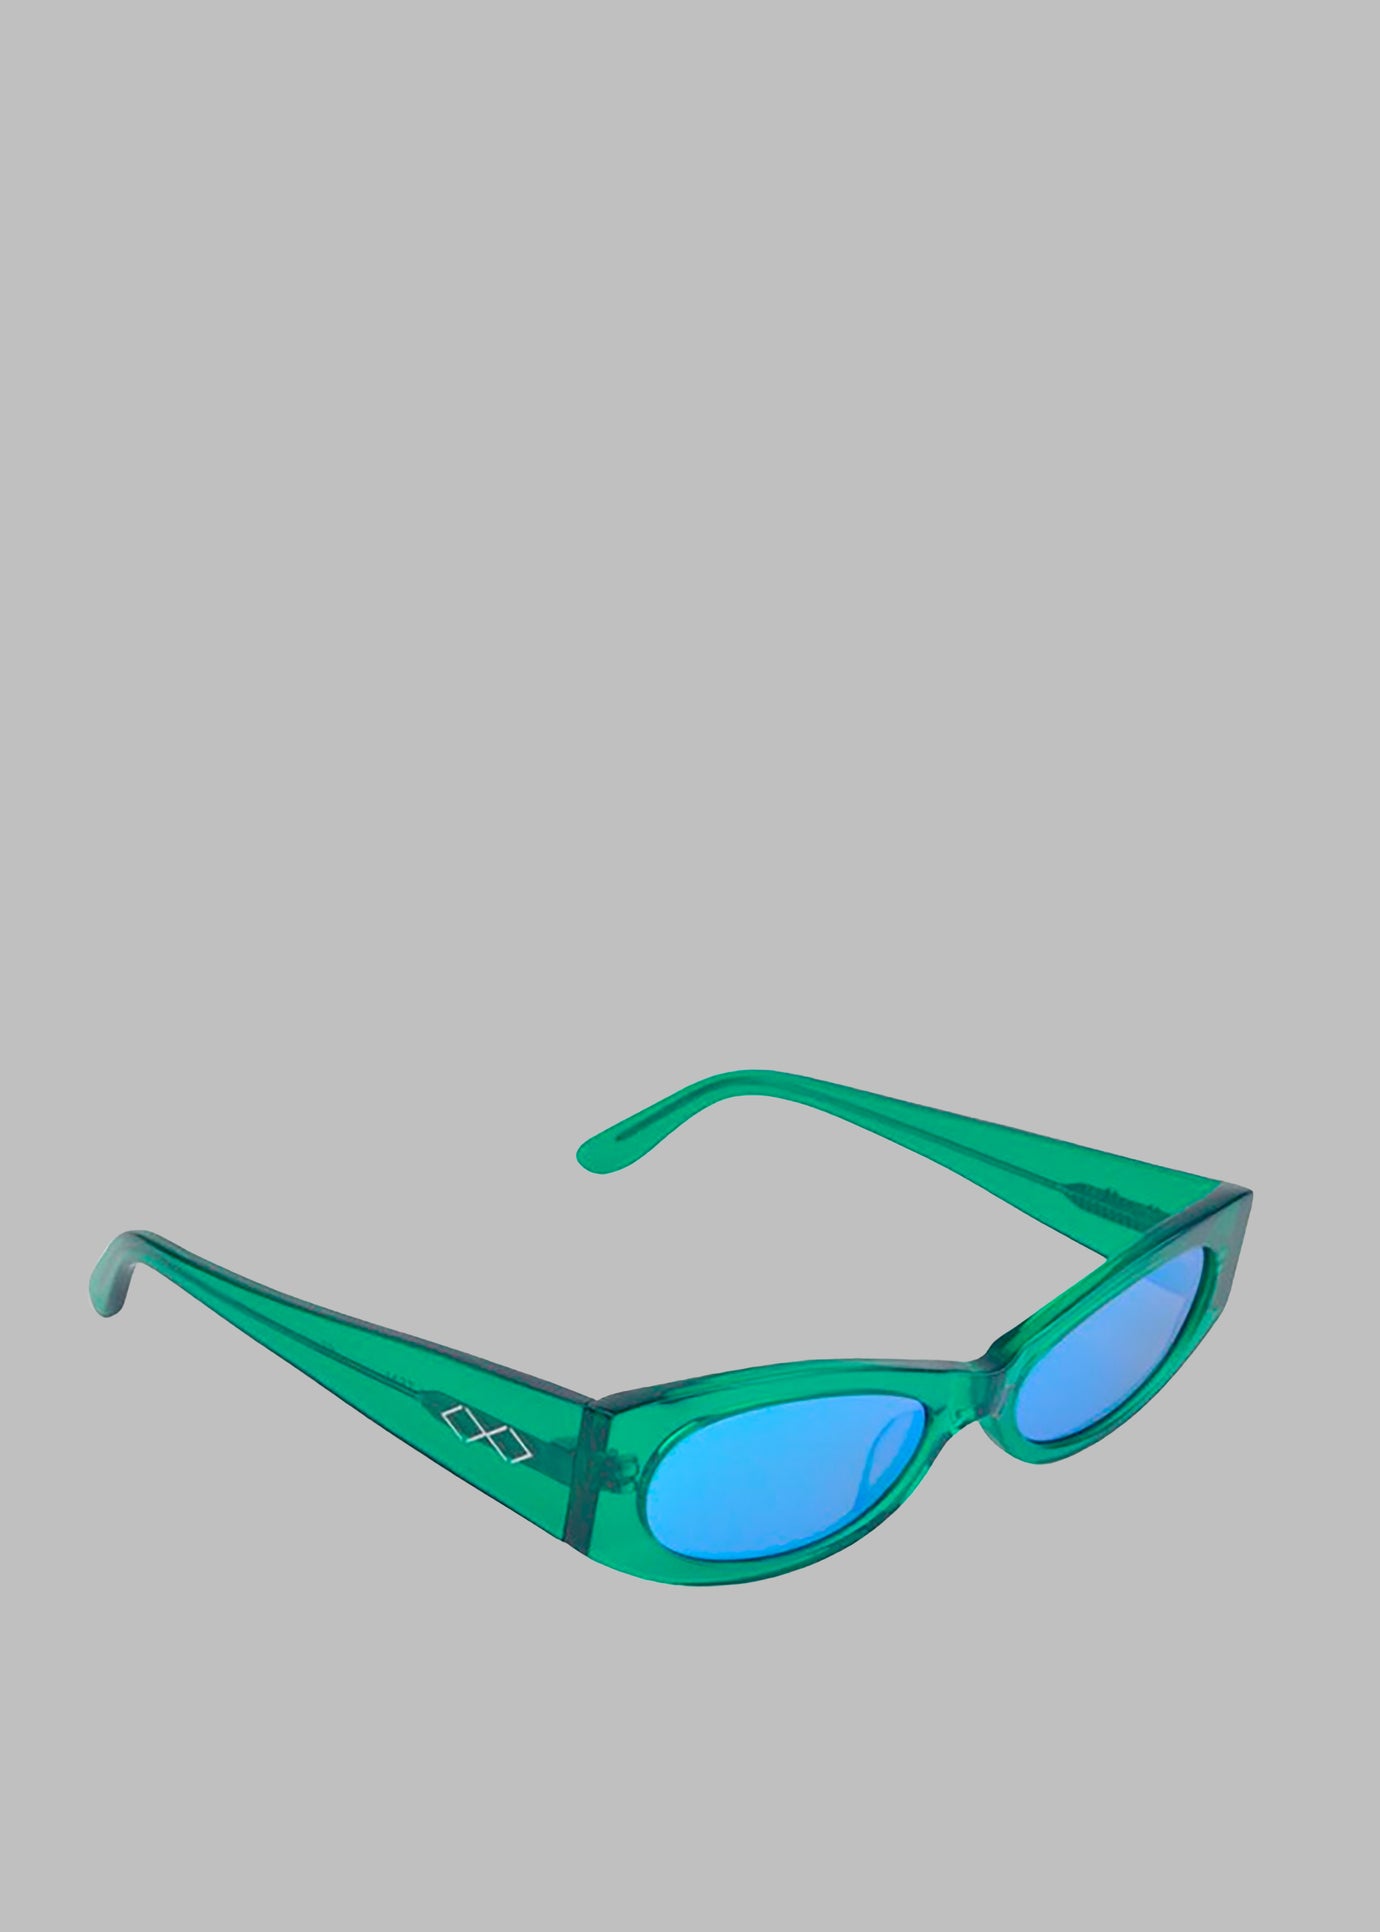 Karen Wazen Ciara Sunglasses - Green Tea